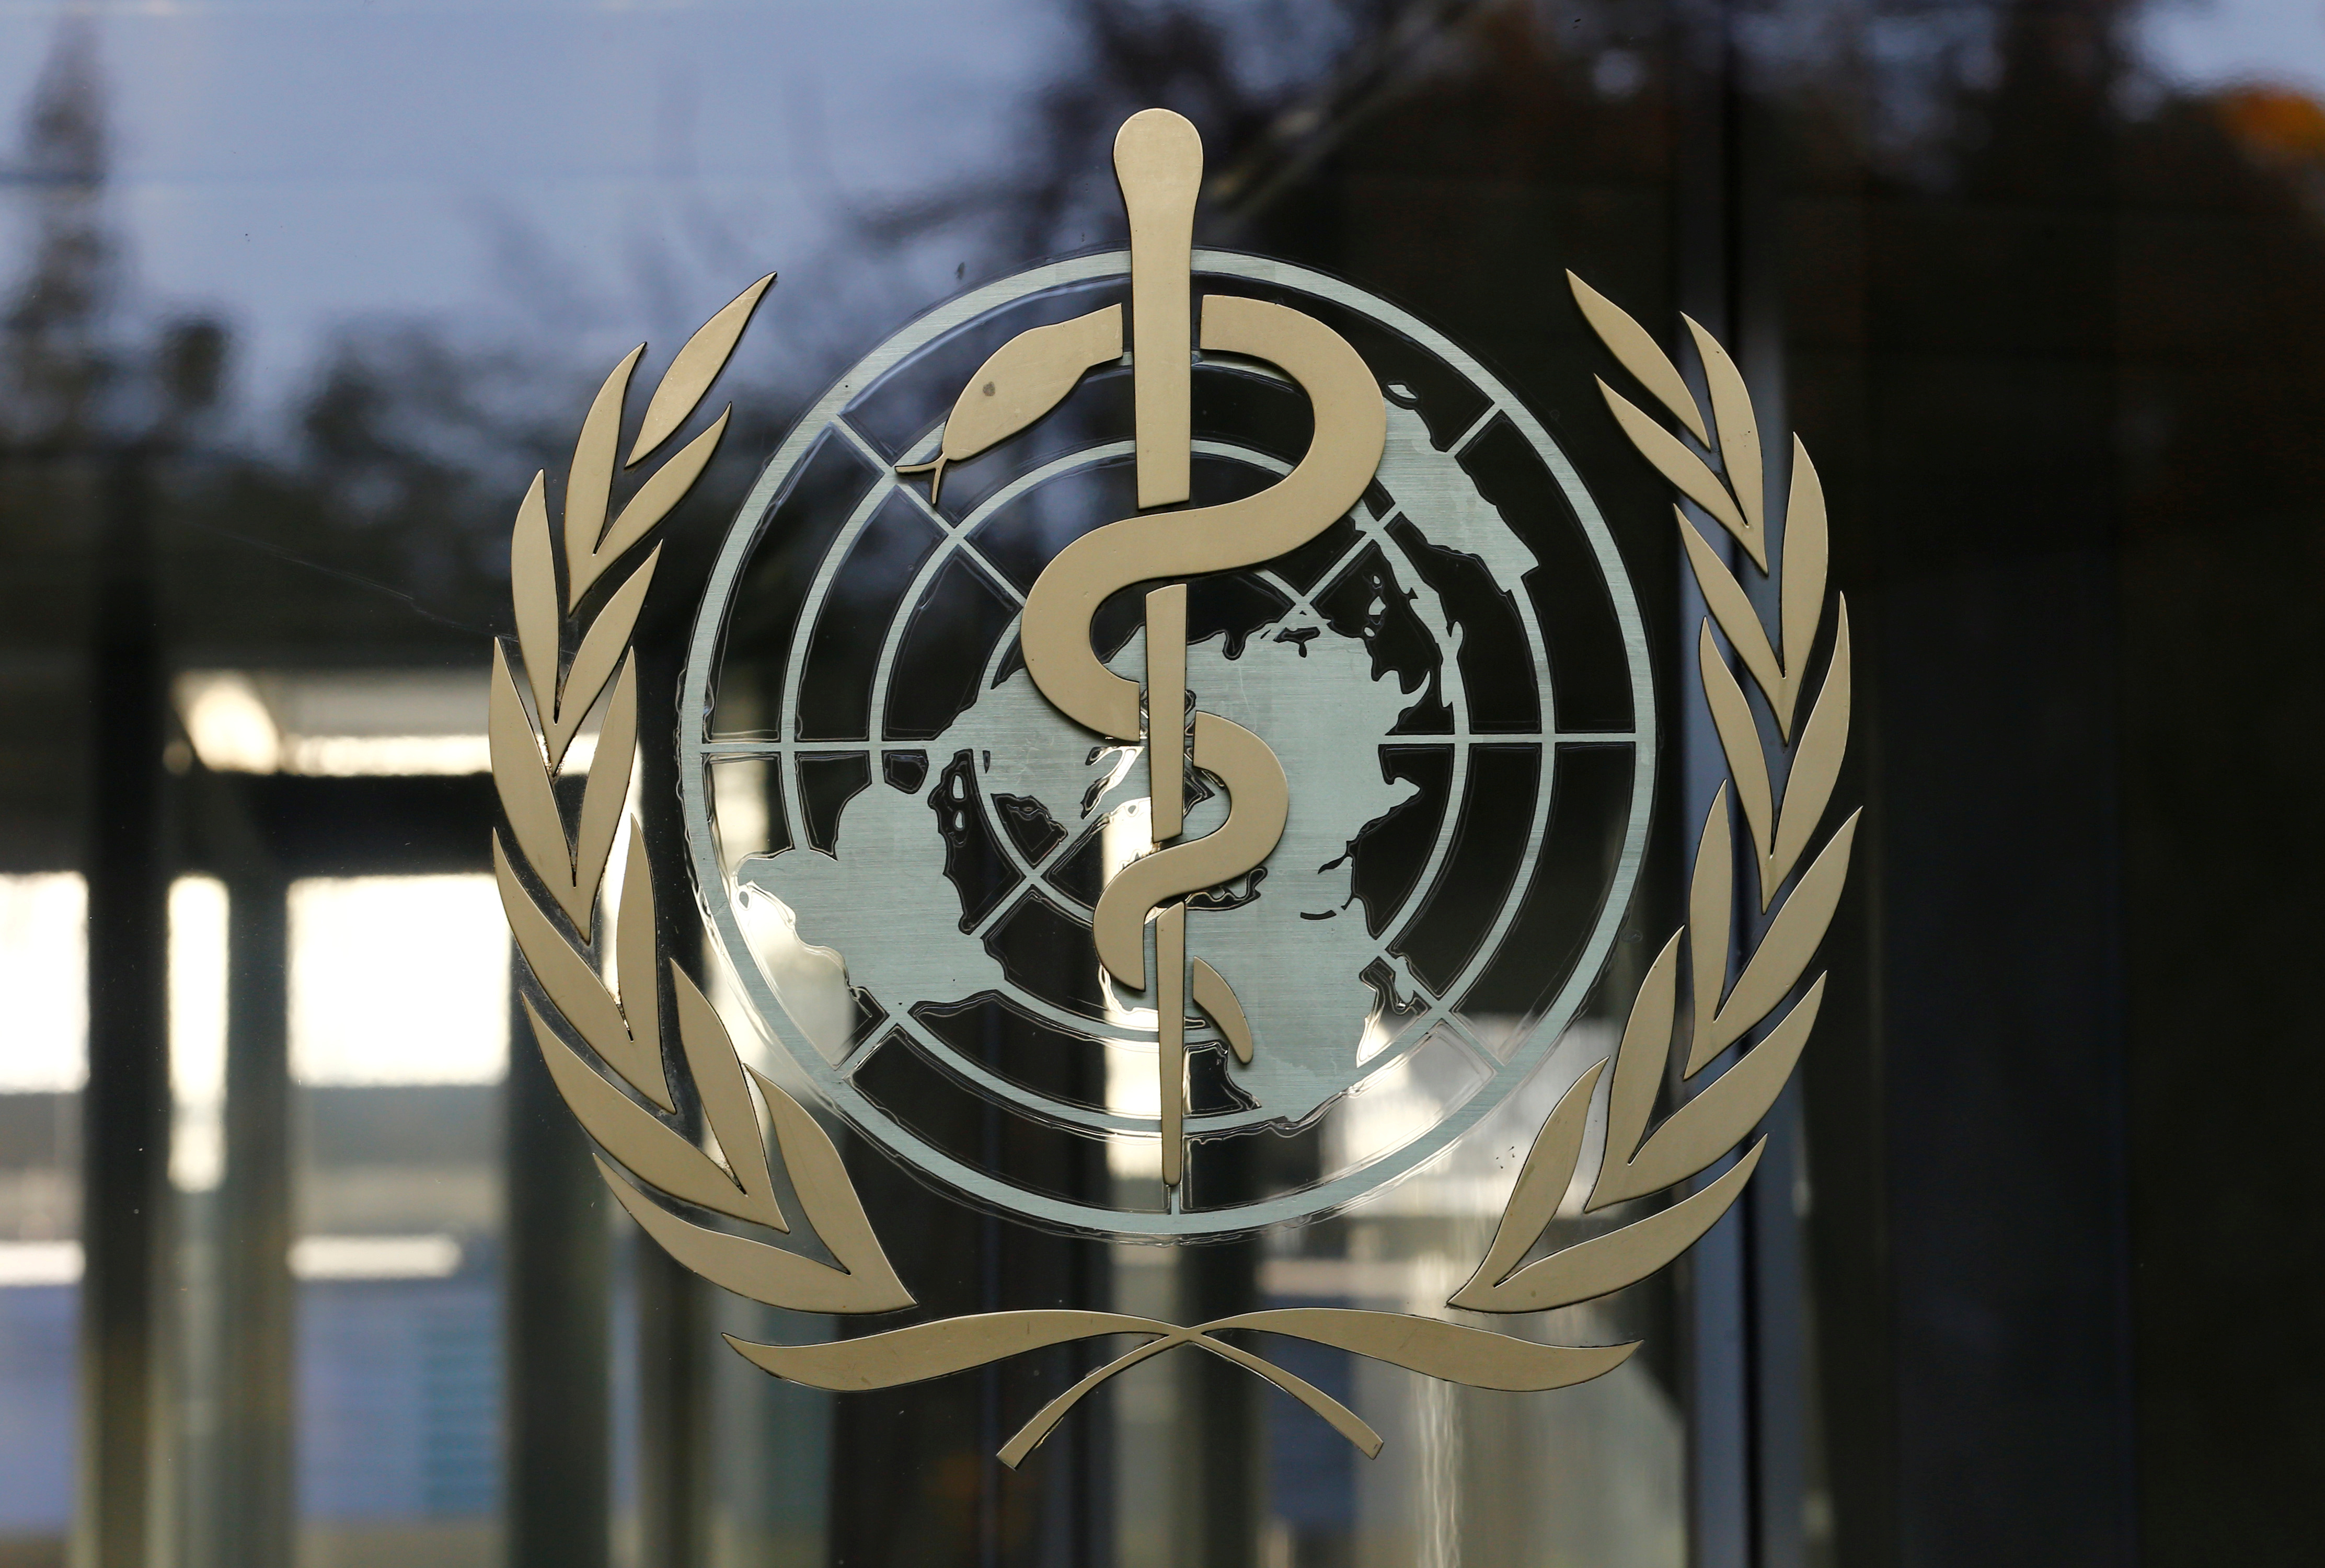 OMS pide a China que “le invite” para investigar orígenes del nuevo coronavirus